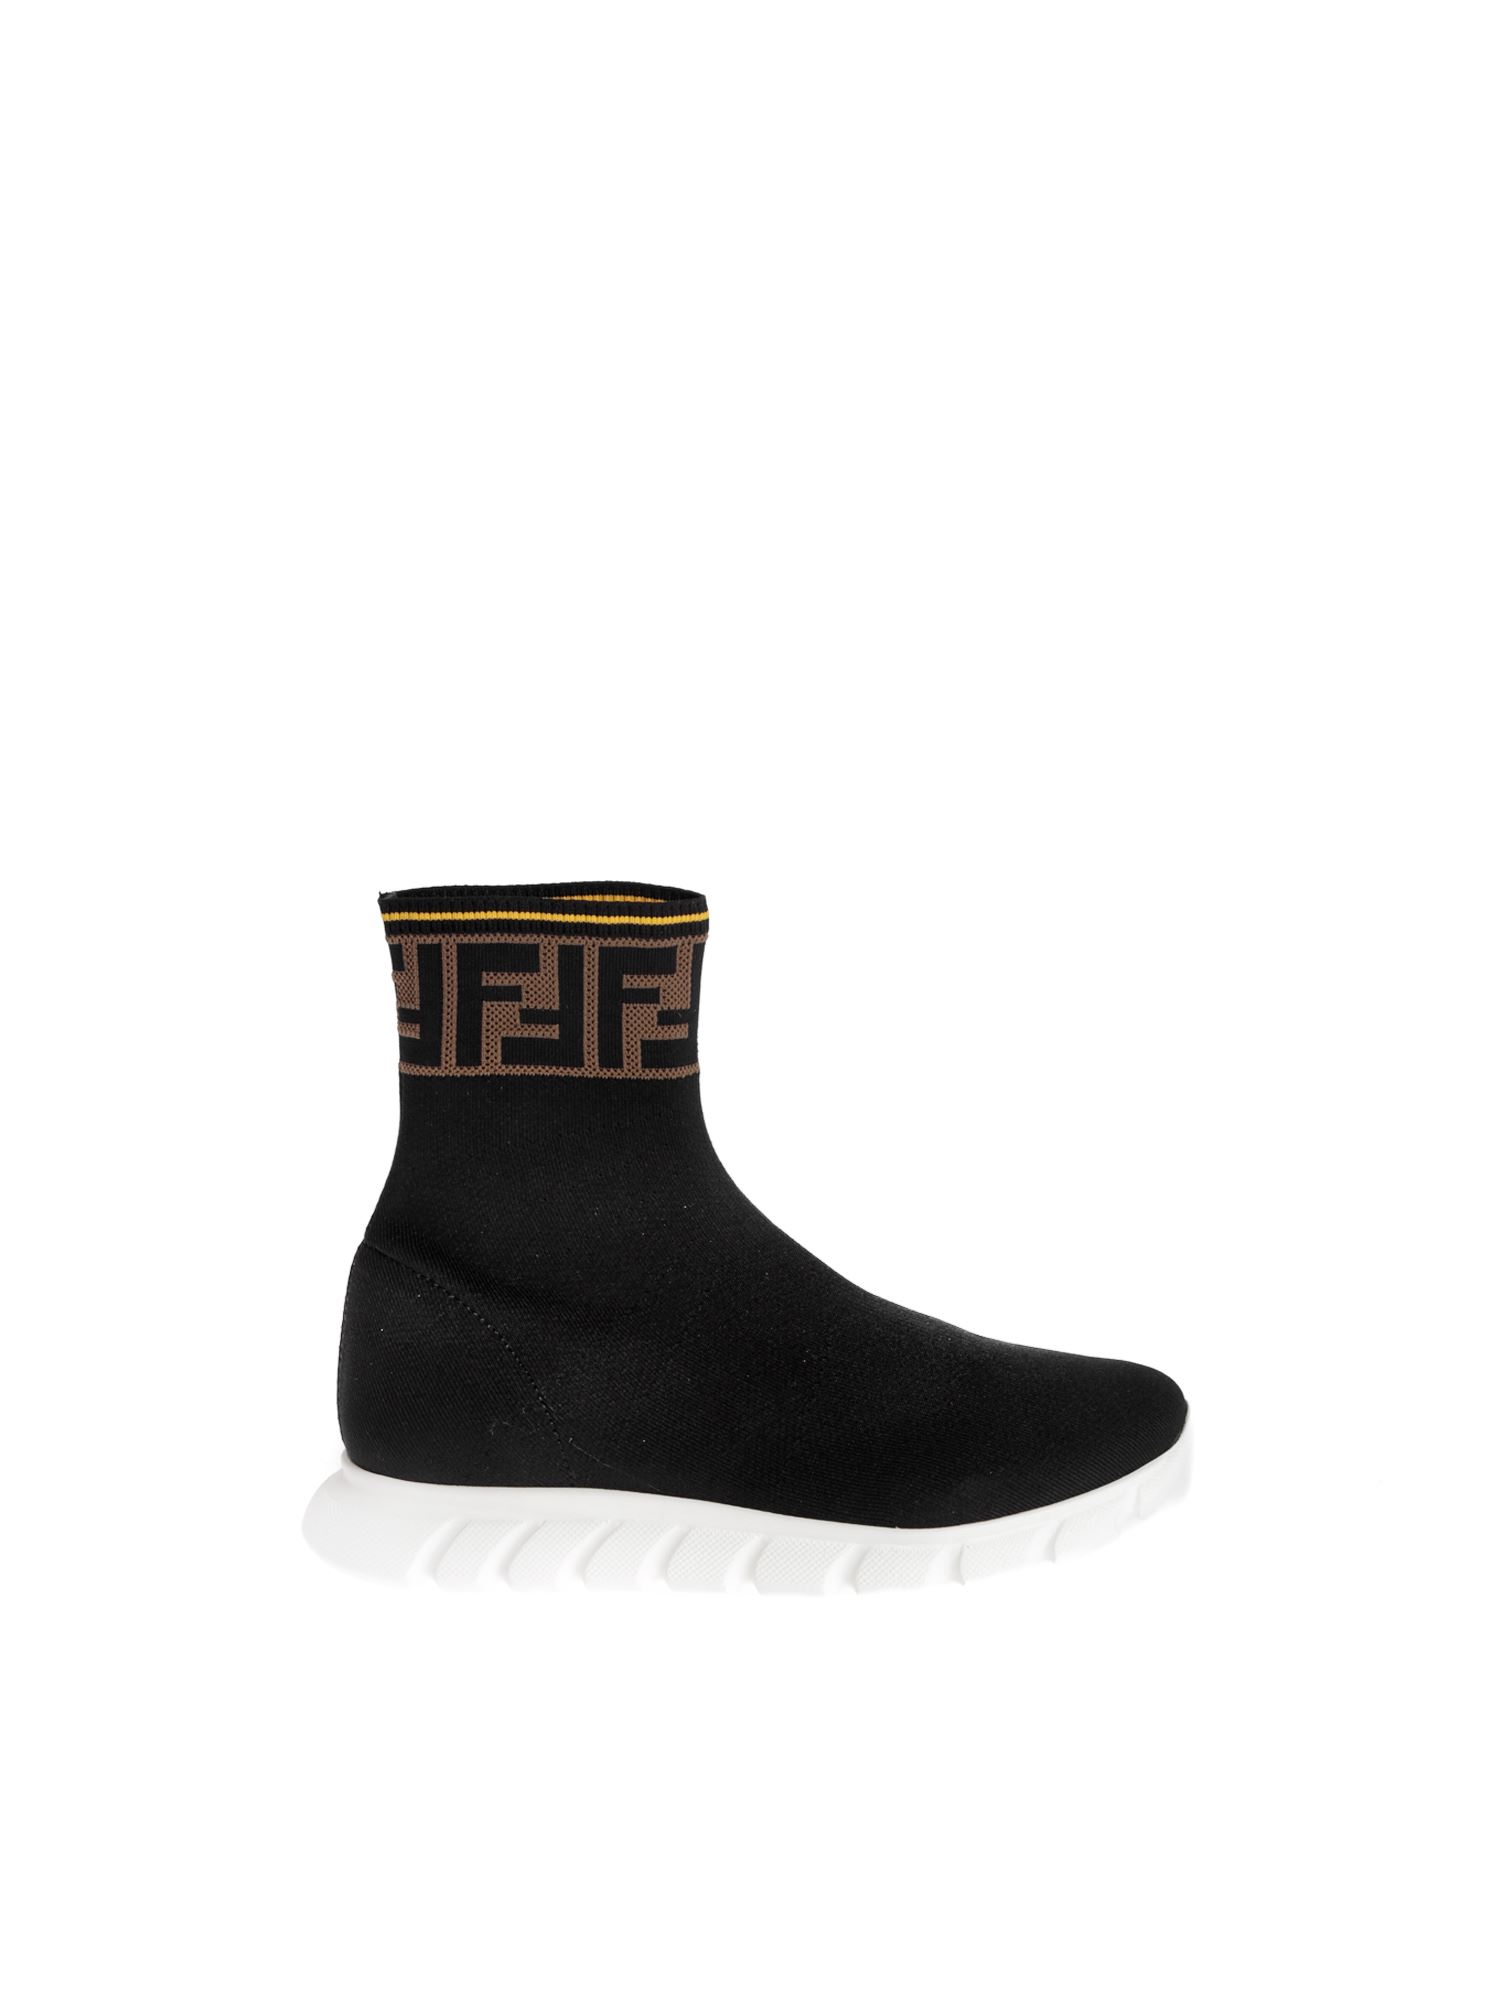 Fendi | FENDI 男童黑色高筒袜运动鞋 JMR322-A62L-F15GD商品图片,5.7折, 独家减免邮费